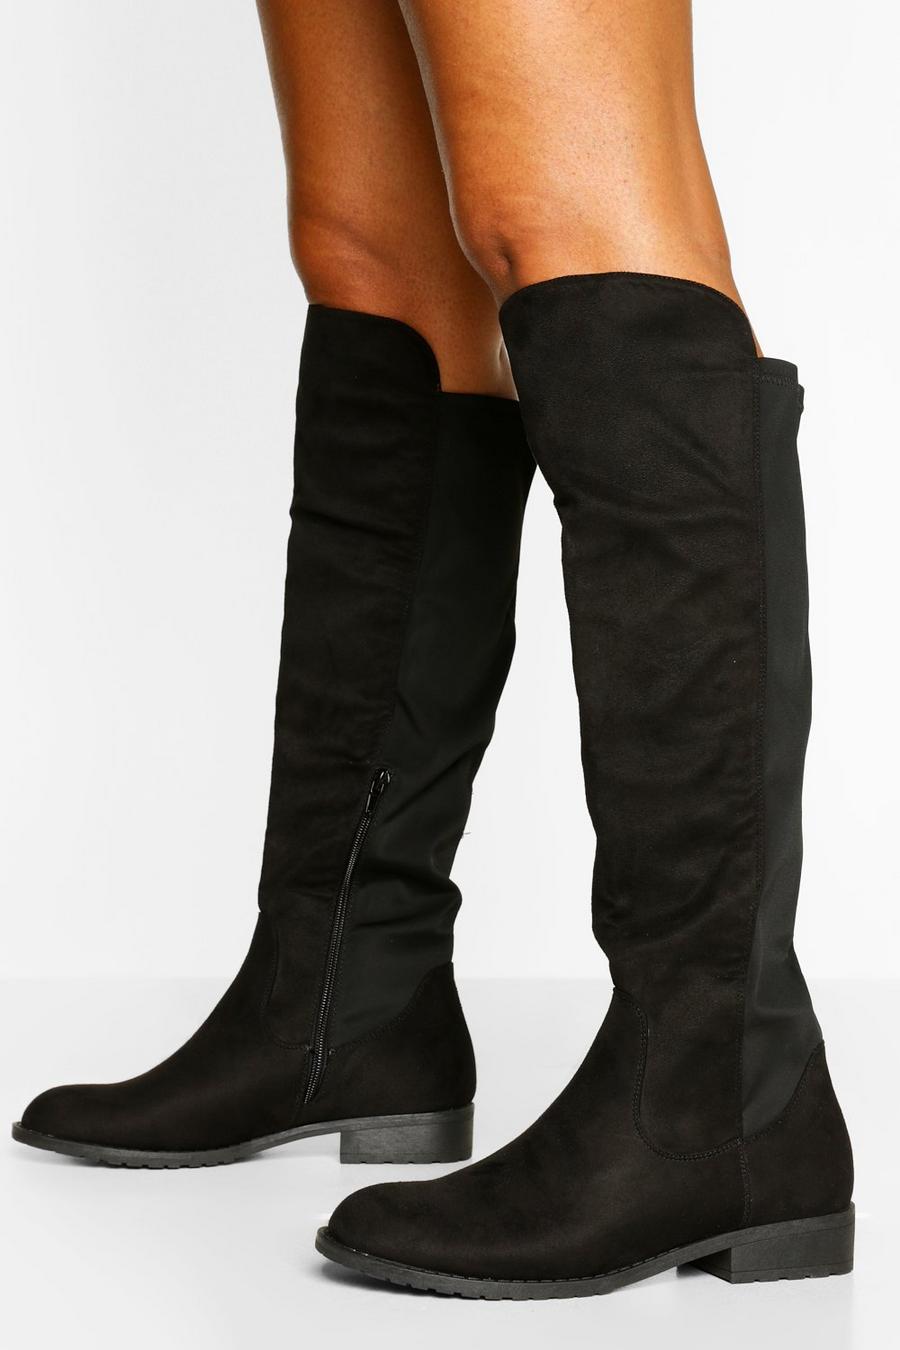 Black svart Wider Calf Knee High Riding Boots